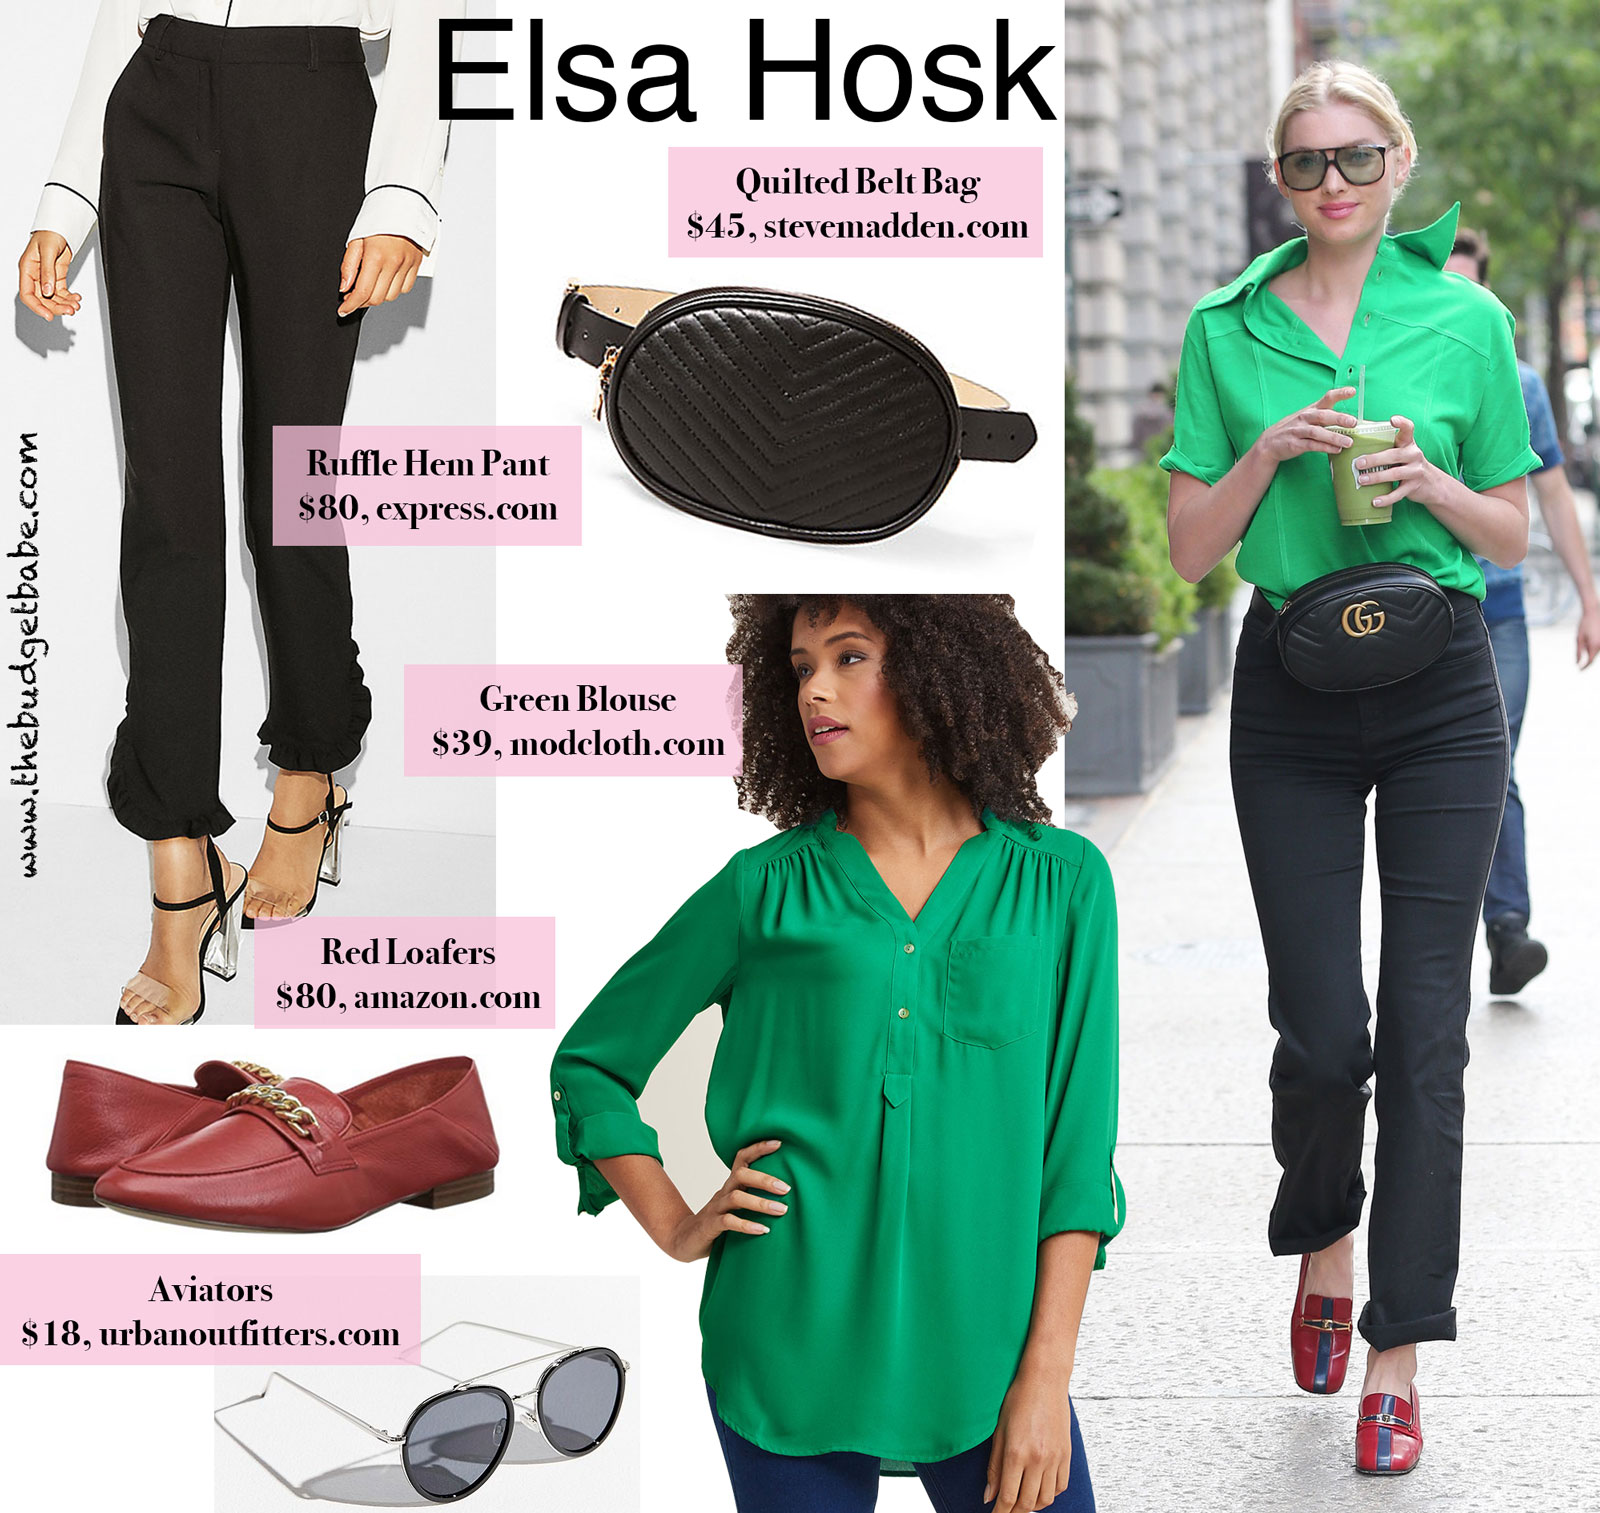 Elsa Hosk Green Blouse Look for Less